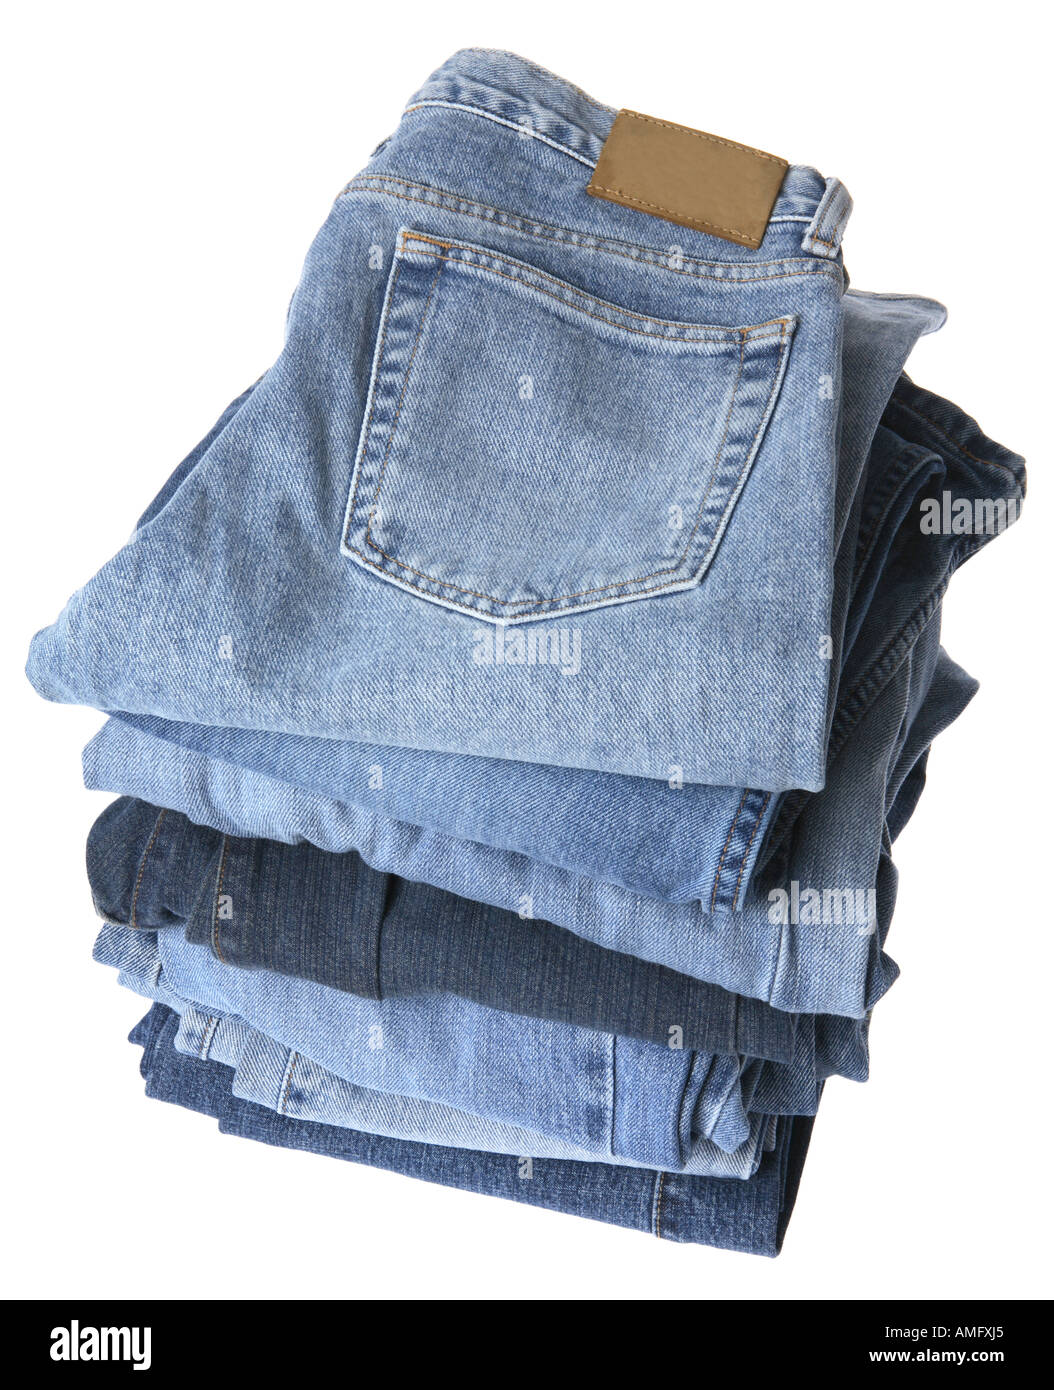 Pile de jeans bleu Banque D'Images